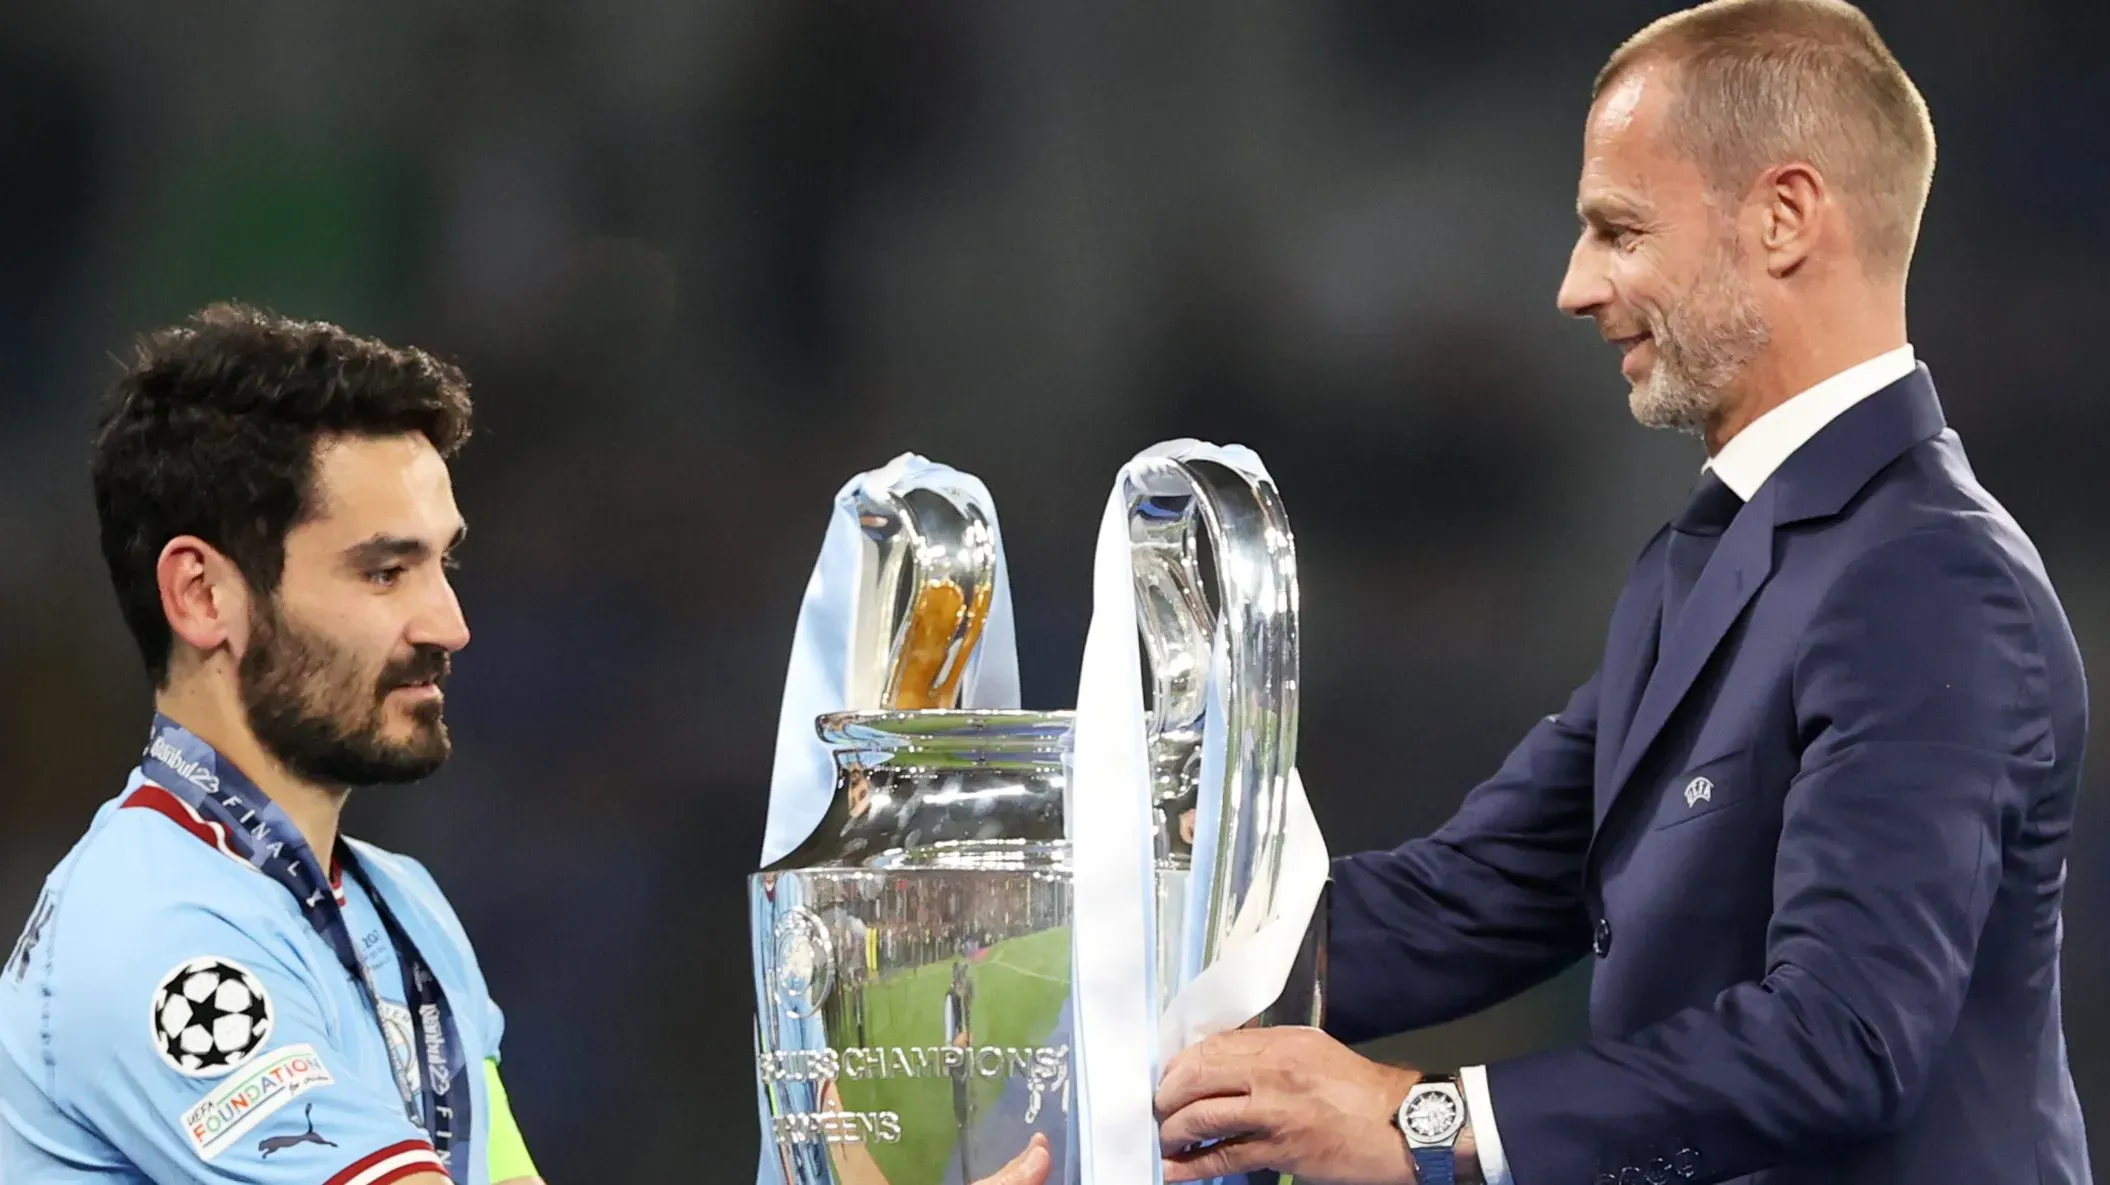 Aleksander Ceferin entregando la Champions League a Ilkay Gundogan, en su momento, el capitán del Manchester City. Getty Images.